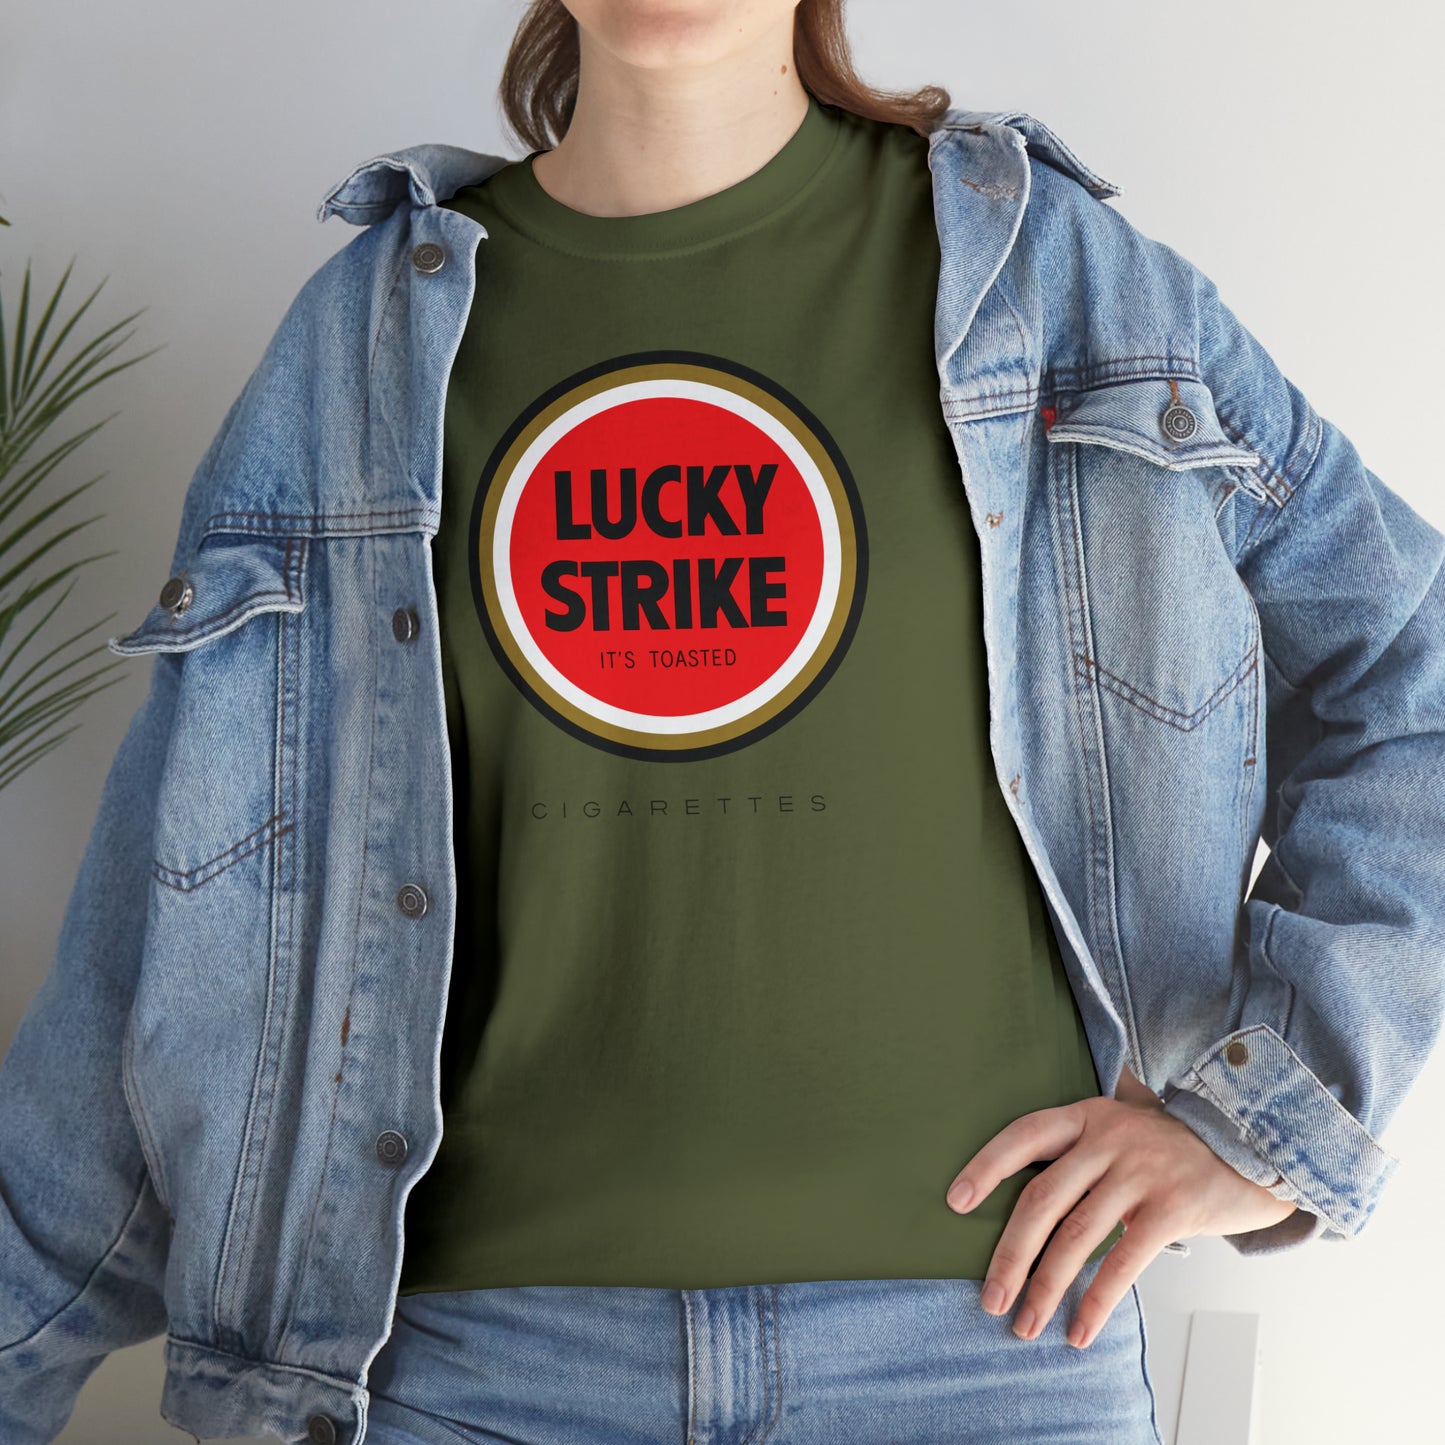 Lucky Strike T-Shirt